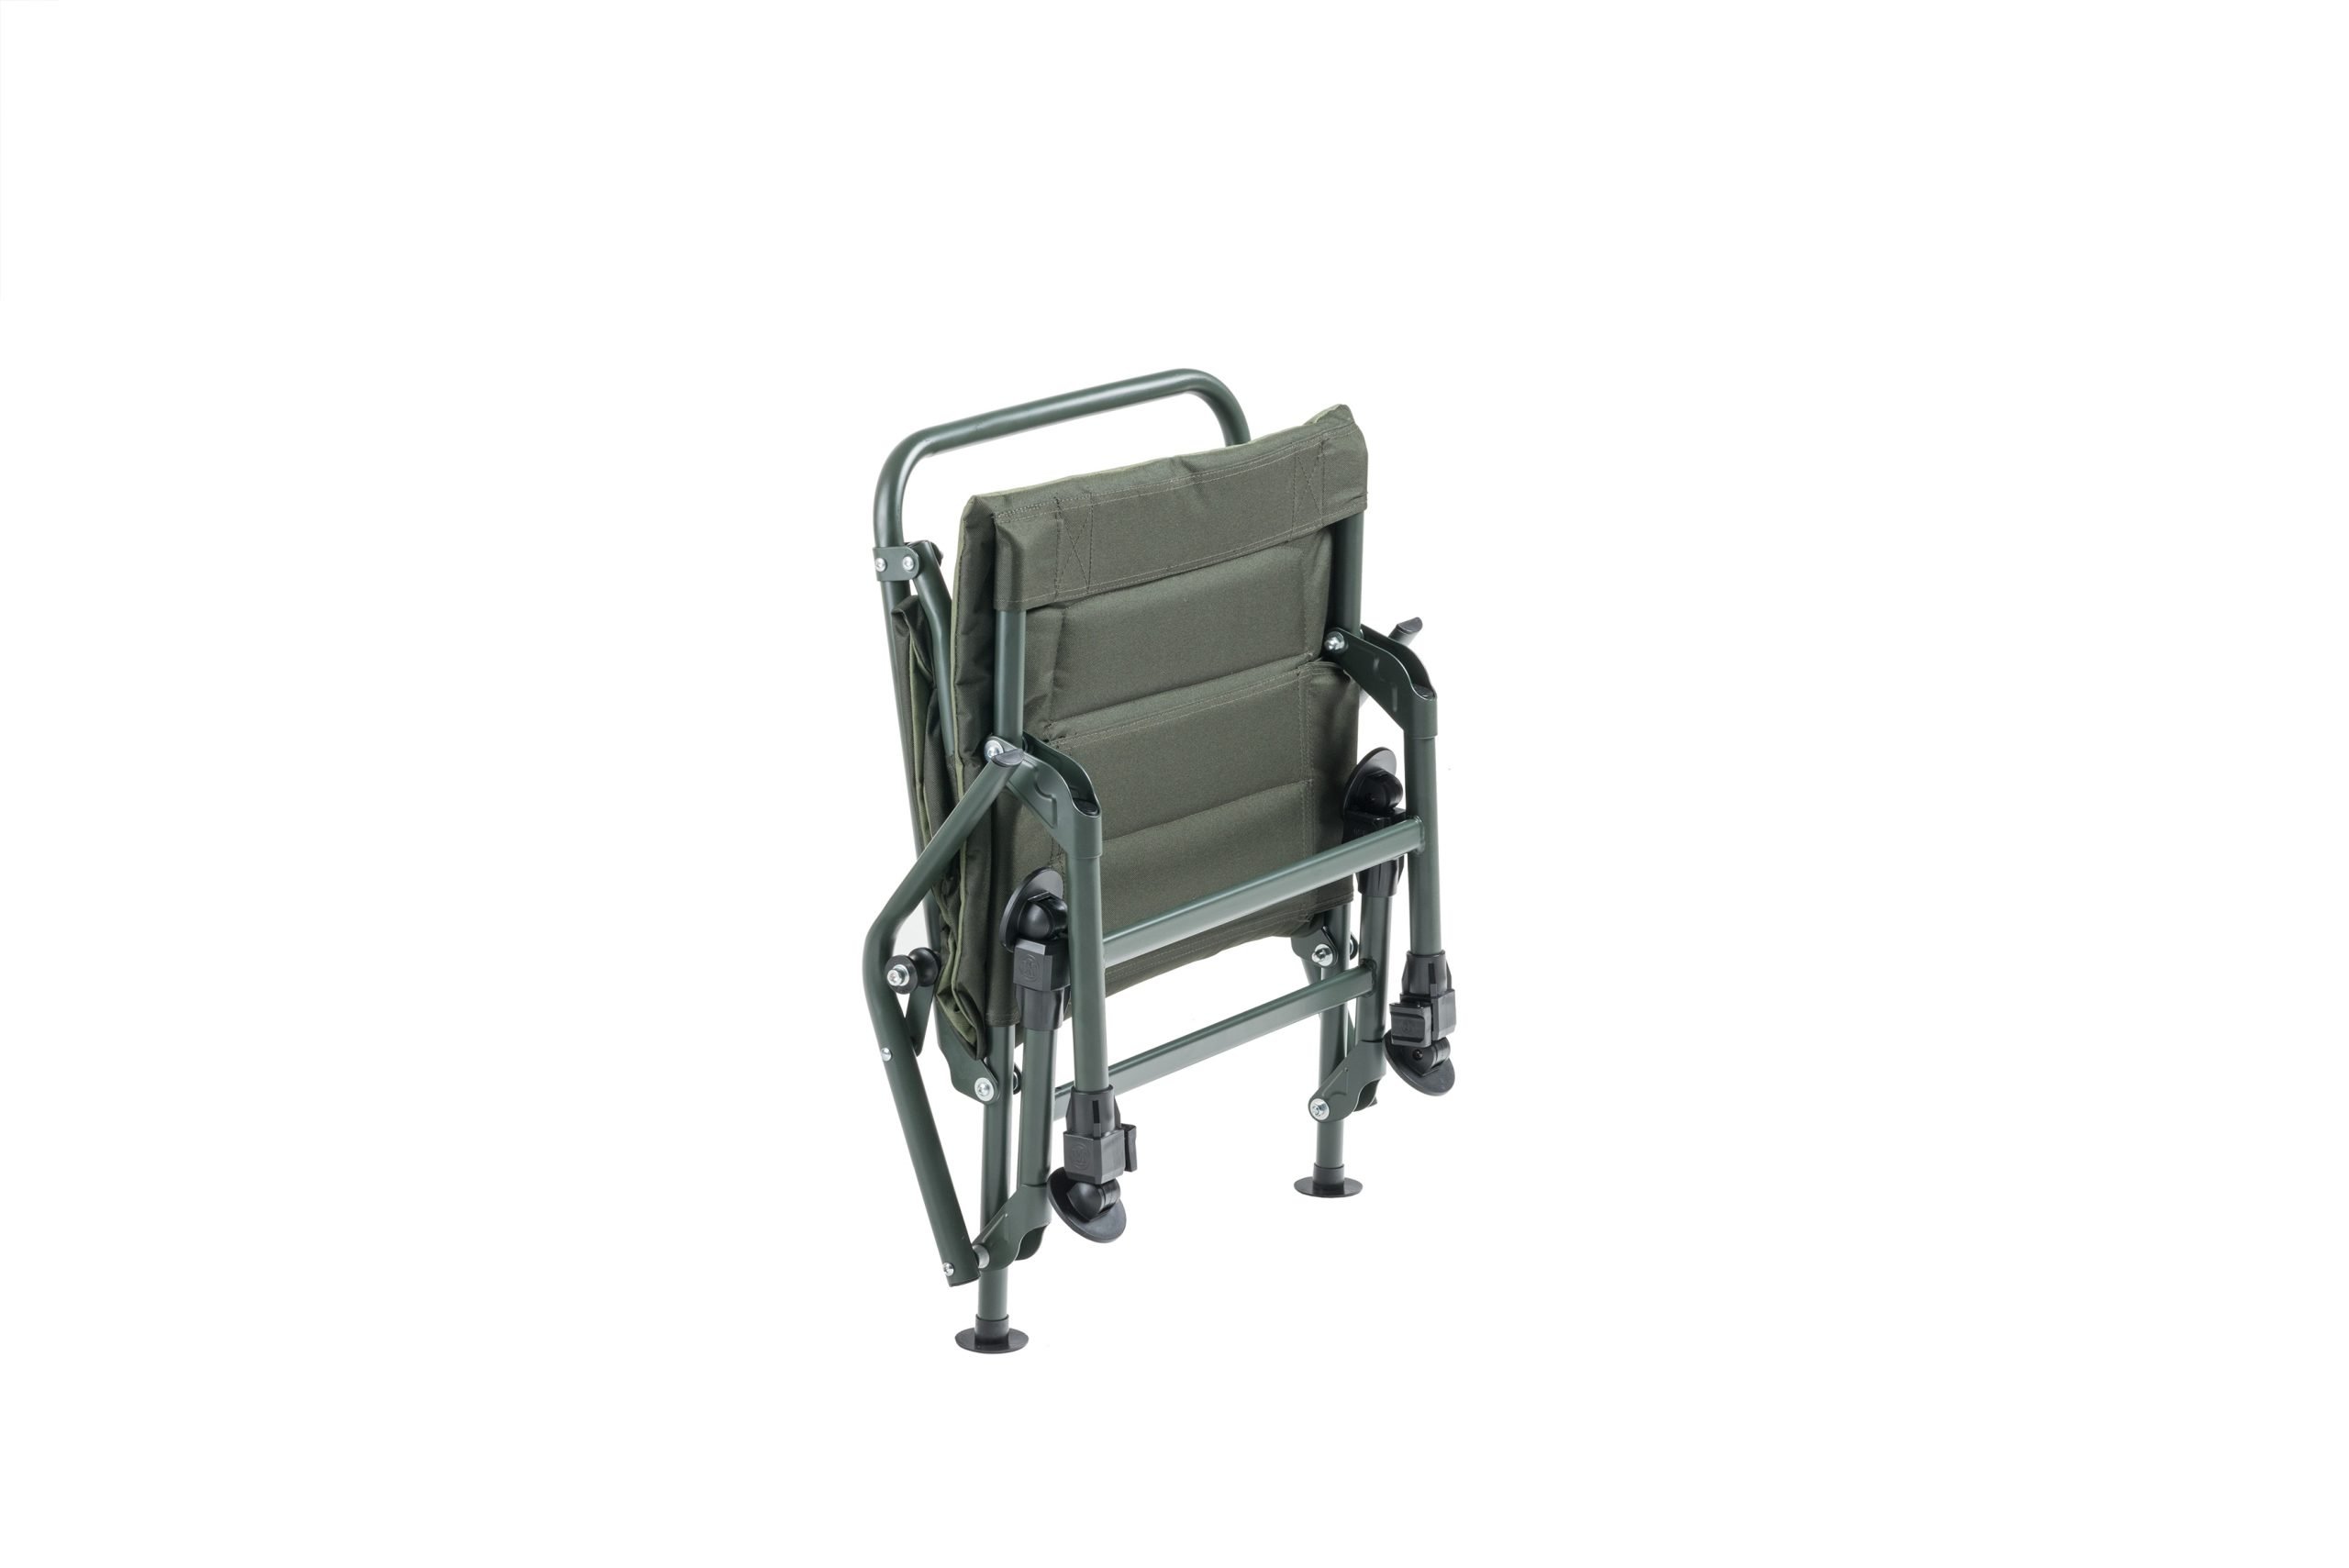 Miardi-Chair-Premium-Long-CarpStore.pl-Miedzynarodowy-Sklep-dla-Karpiarzy-4